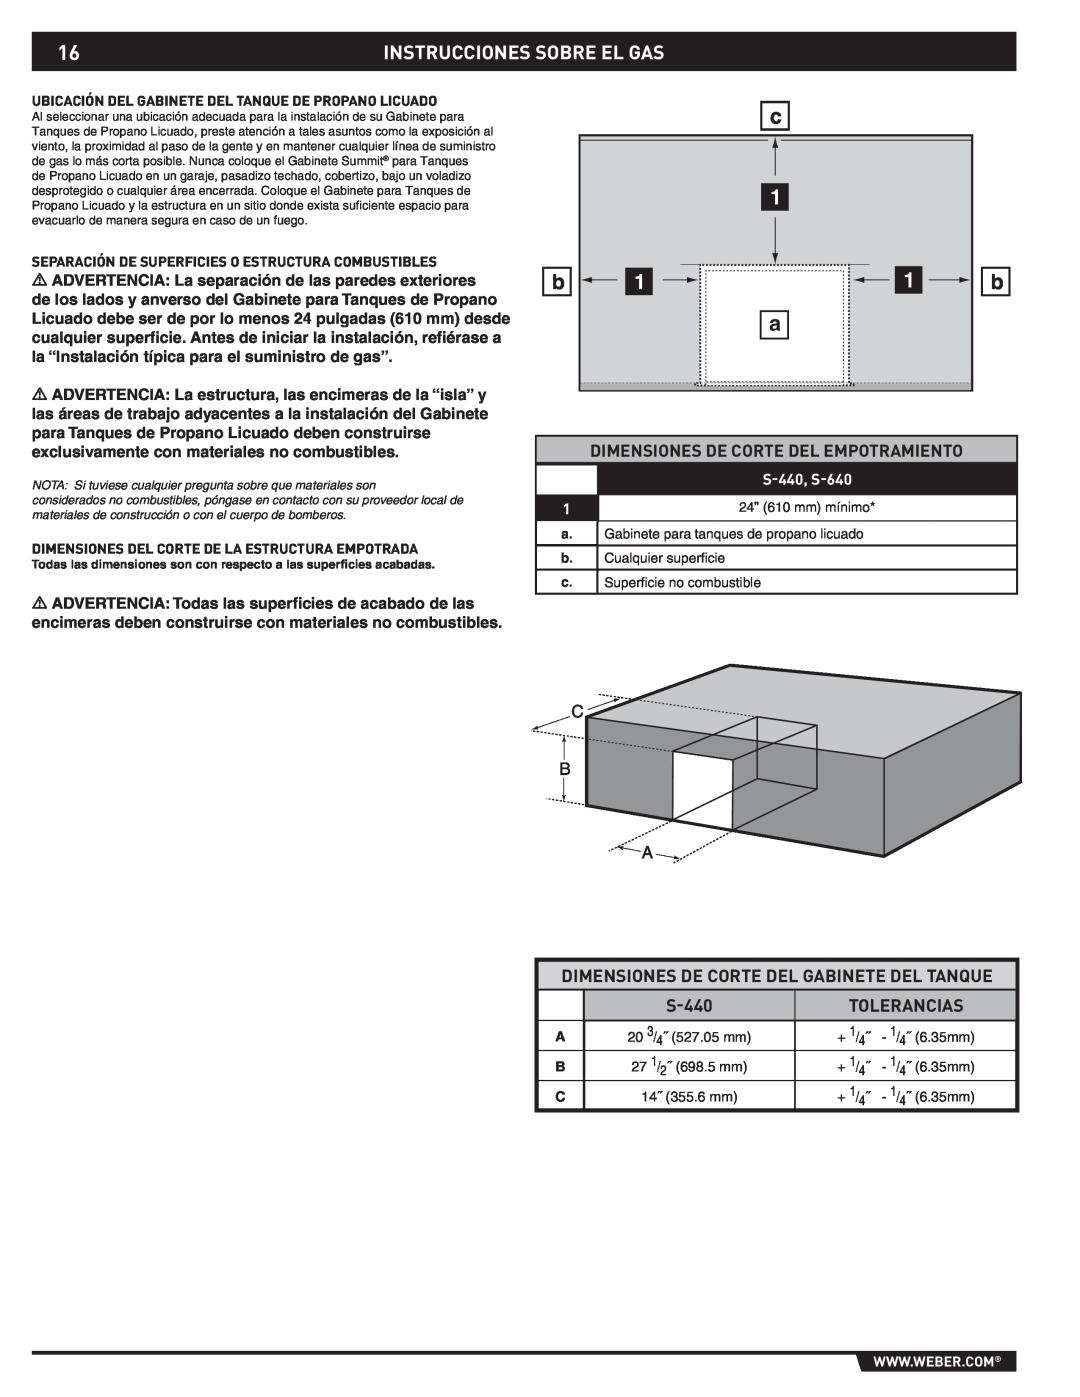 Summit 43176 manual Instrucciones Sobre El Gas, Dimensiones De Corte Del Empotramiento, Tolerancias, S-440, S-640 